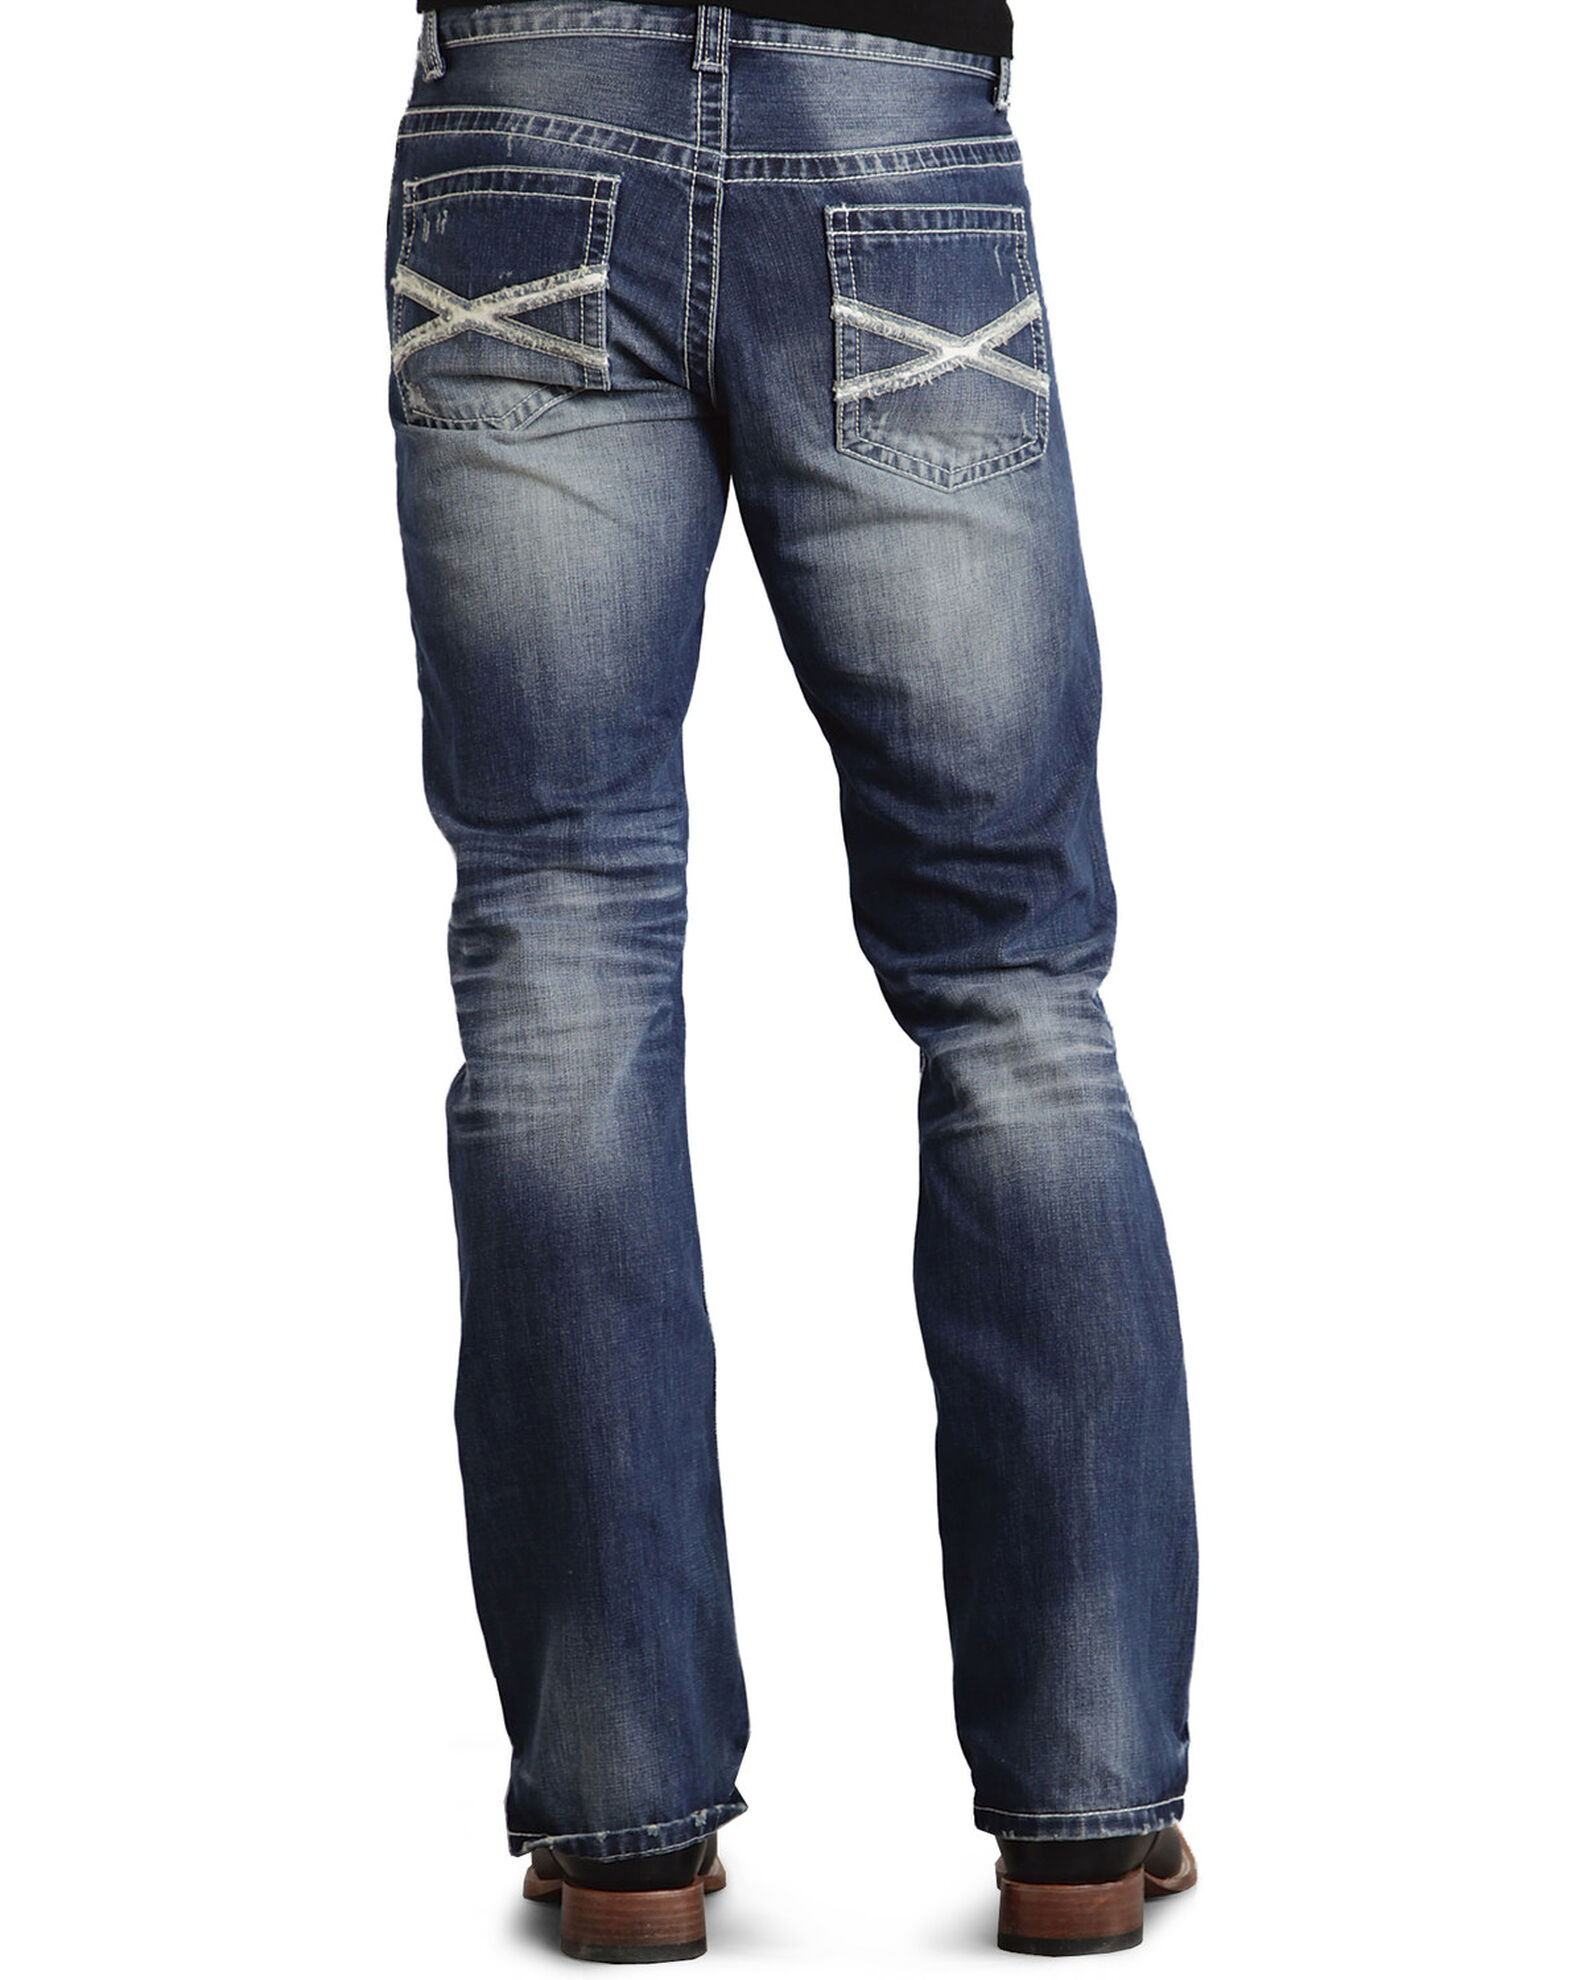 Stetson Men's Rocks Fit Jeans 32 / 34 / Medium Wash